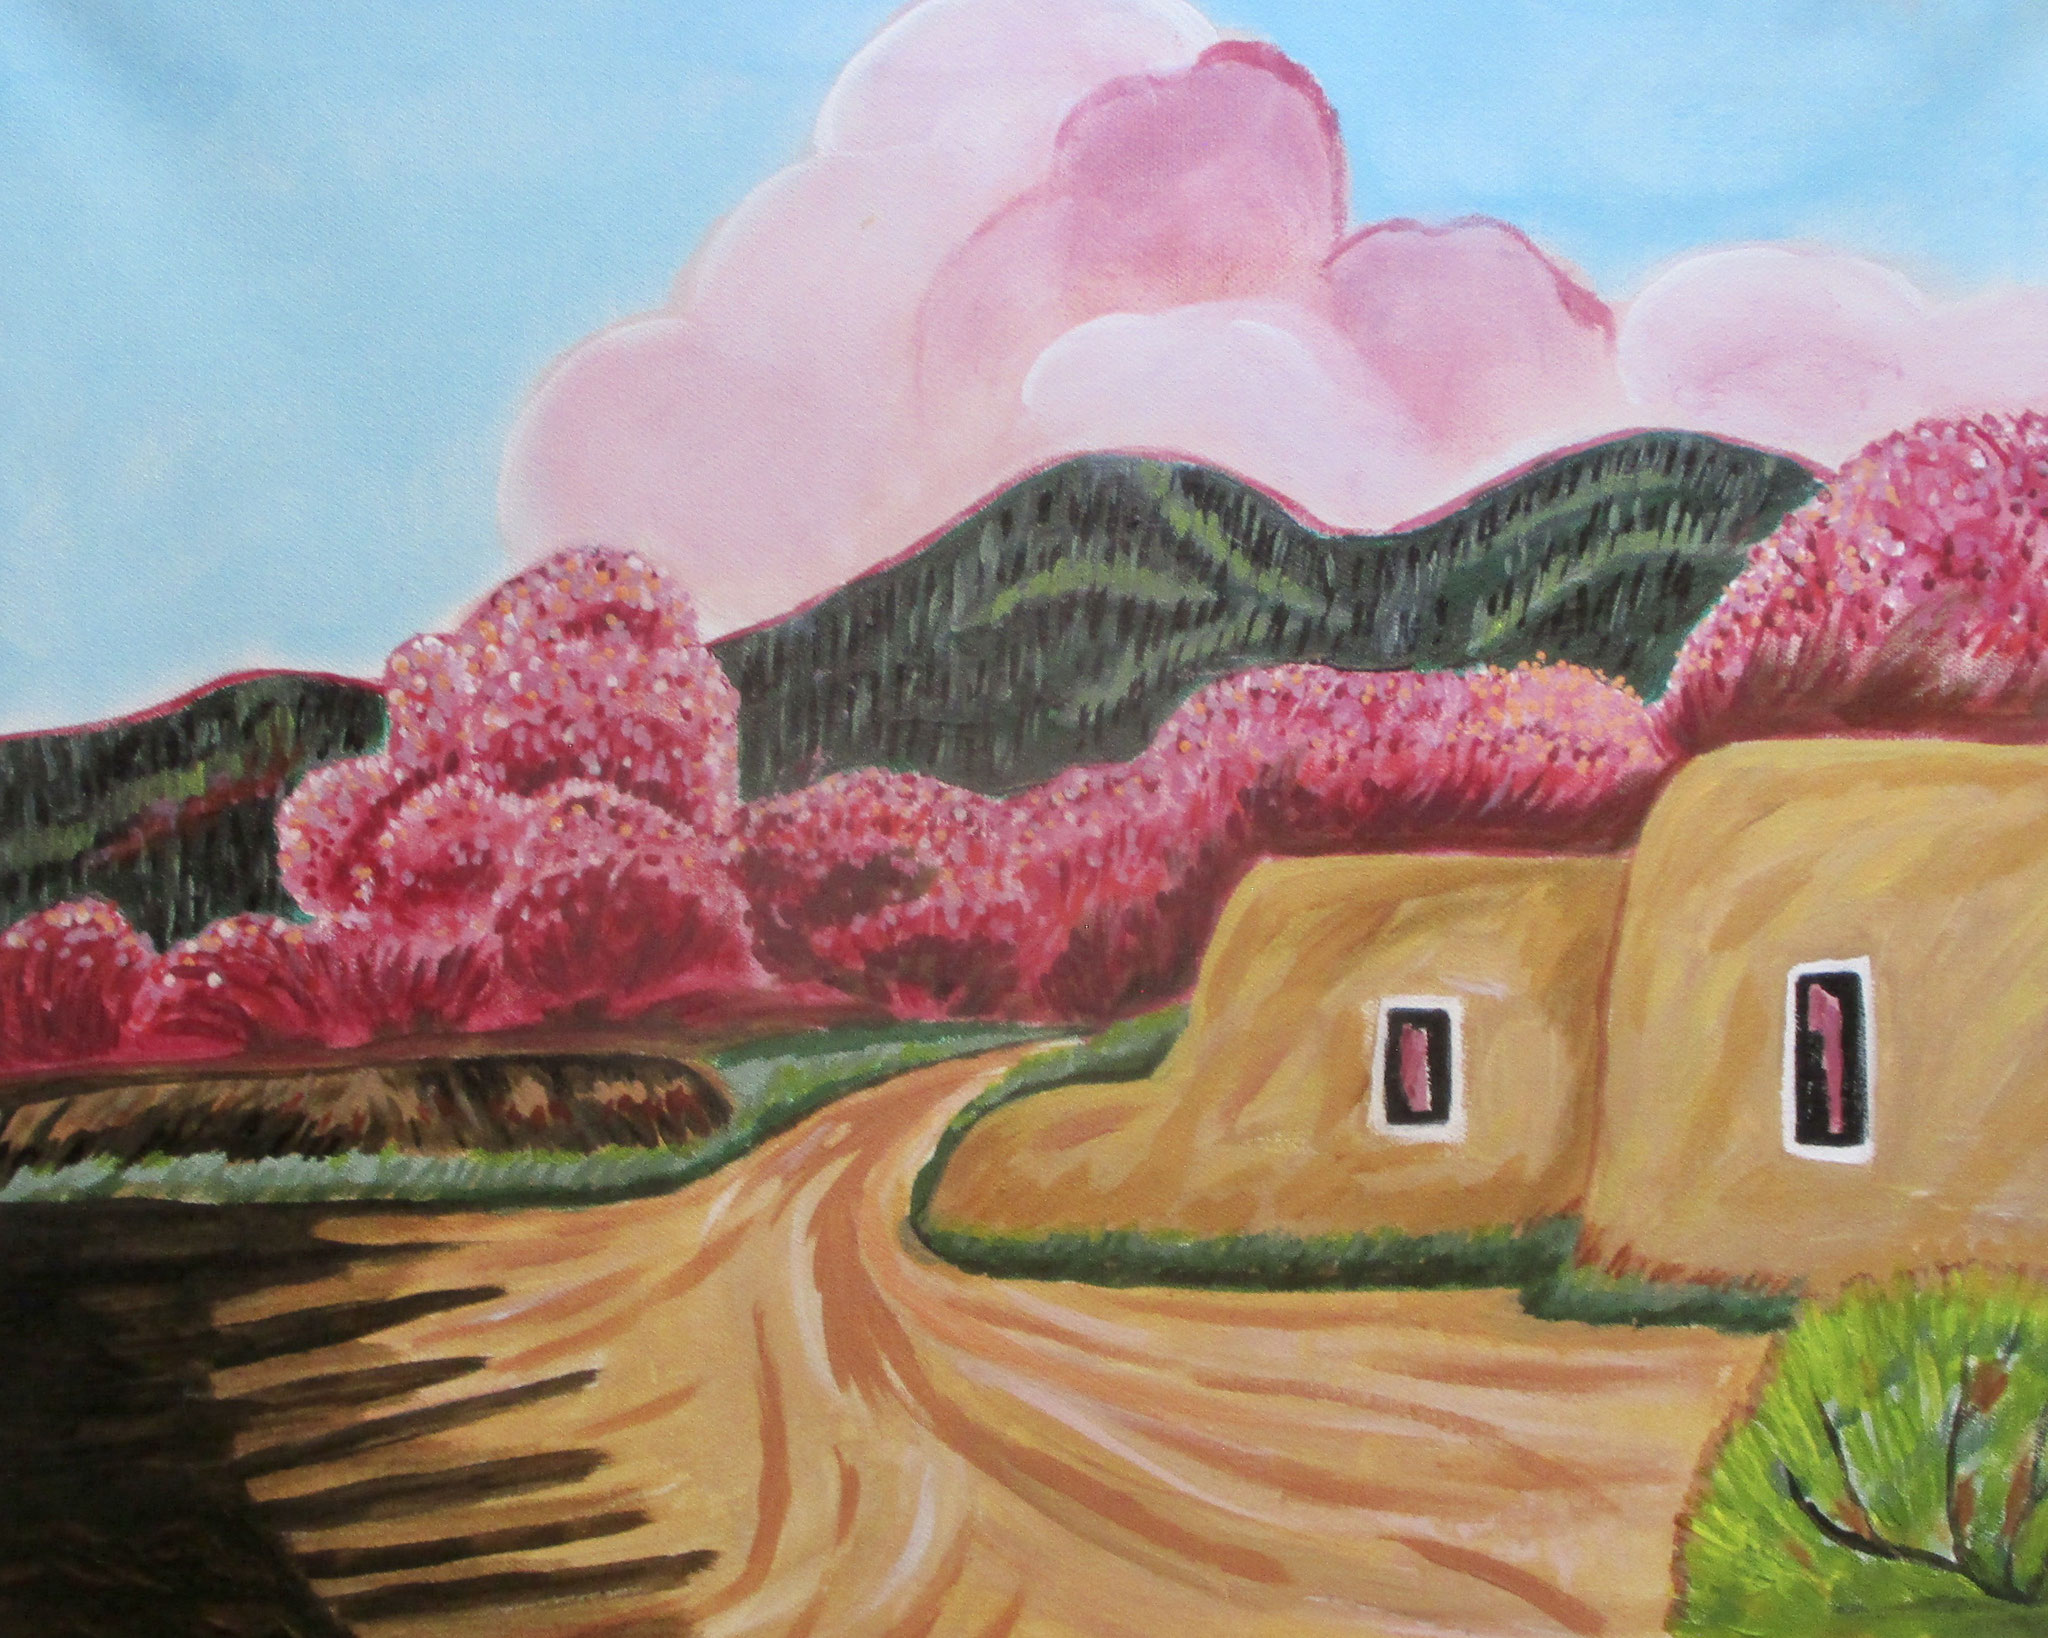 Santa Fe Spring, oil on canvas 20 x 16